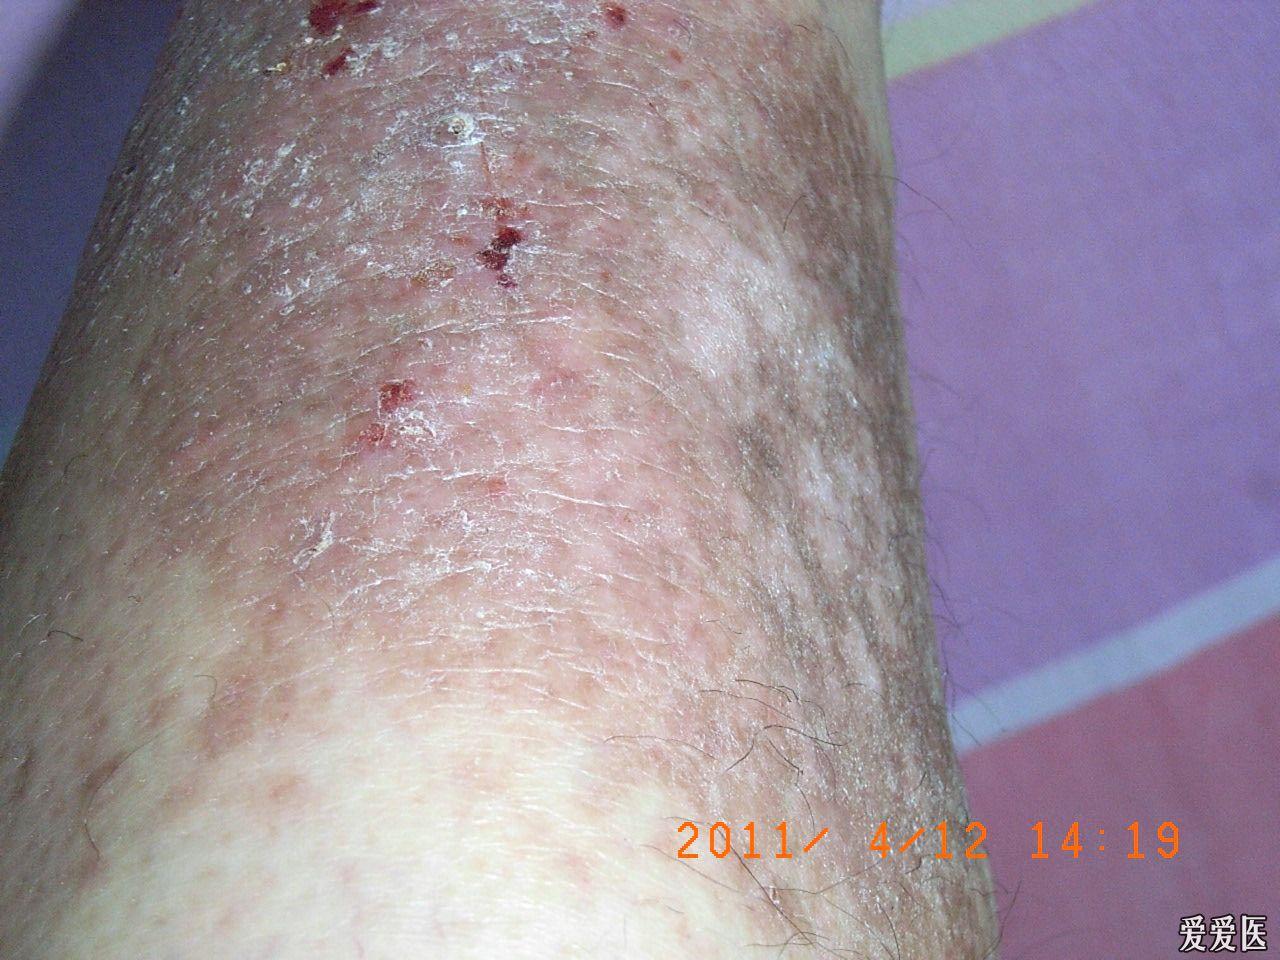 某男,47岁.6年前7月左小腿前部出现一簇红疹瘙痒,逐渐成为癣块